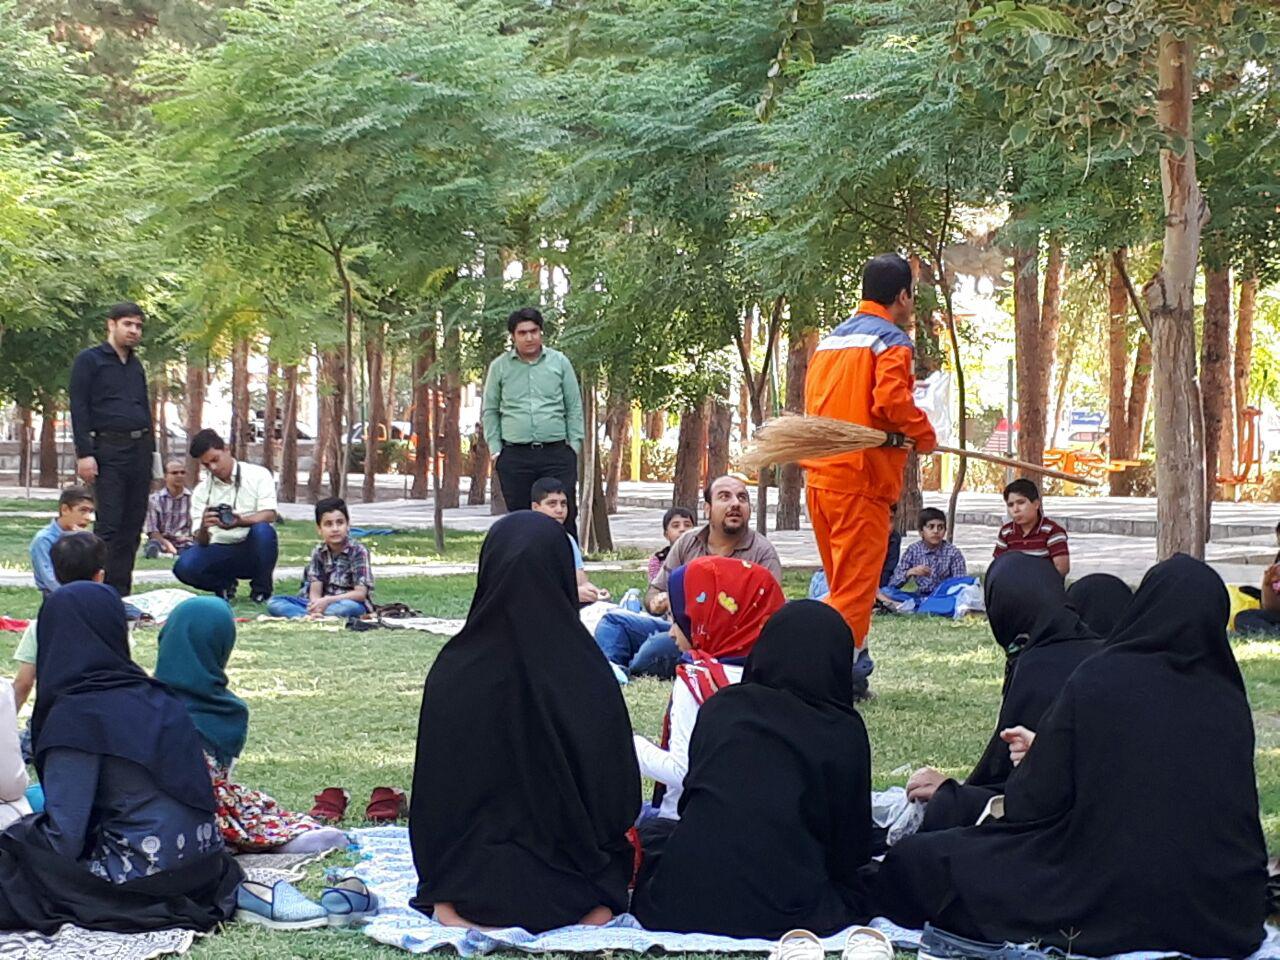 پارک آیت الله مدنی میزبان یک نمایش خیابانی شد / نمایش خیابانی با موضوع اخلاق شهروندی در پارک آیت الله مدنی(ره) اجرا شد